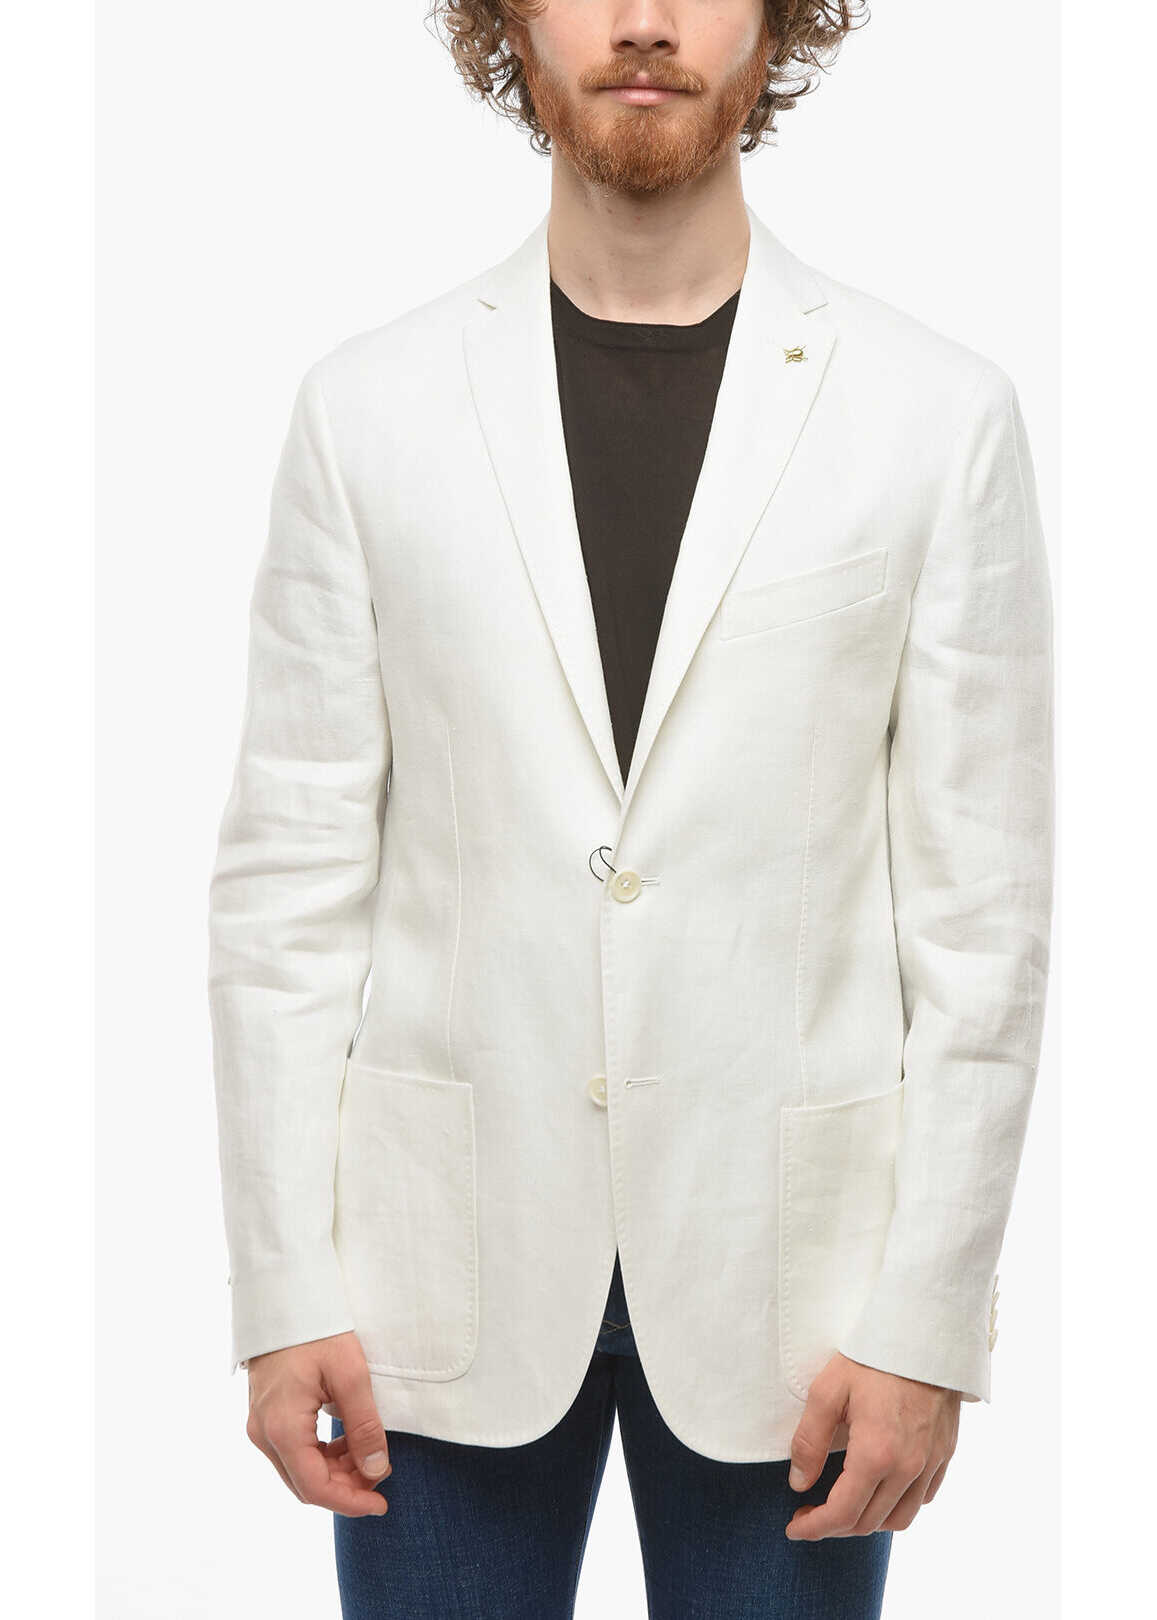 CORNELIANI Cc Collection Half-Lined Right Linen Blazer White